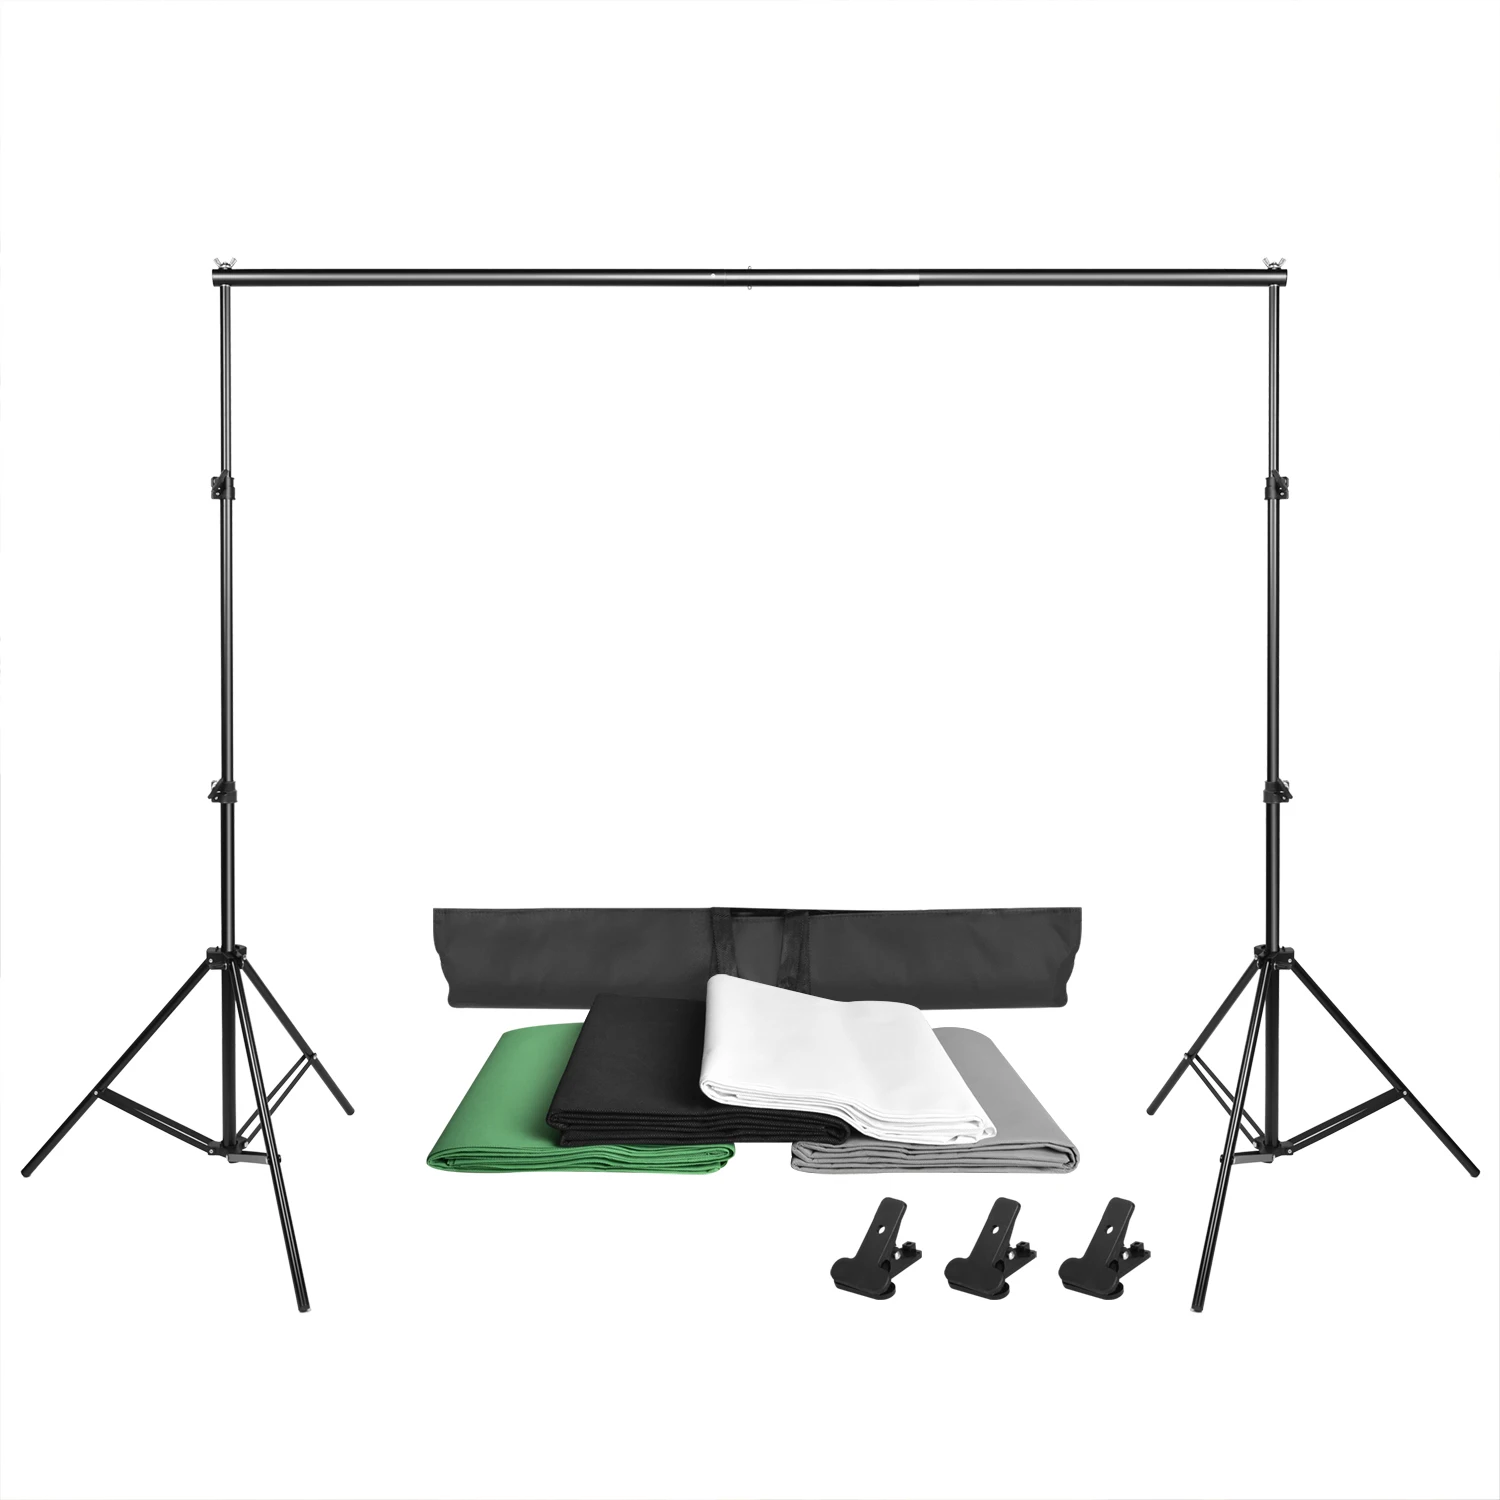 ZUOCHEN Фотостудия Фон Поддержка Стенд Комплект 1,6x3 м черный/белый/зеленый/серый фон экран+ 2 м x 2 м поддержка фона